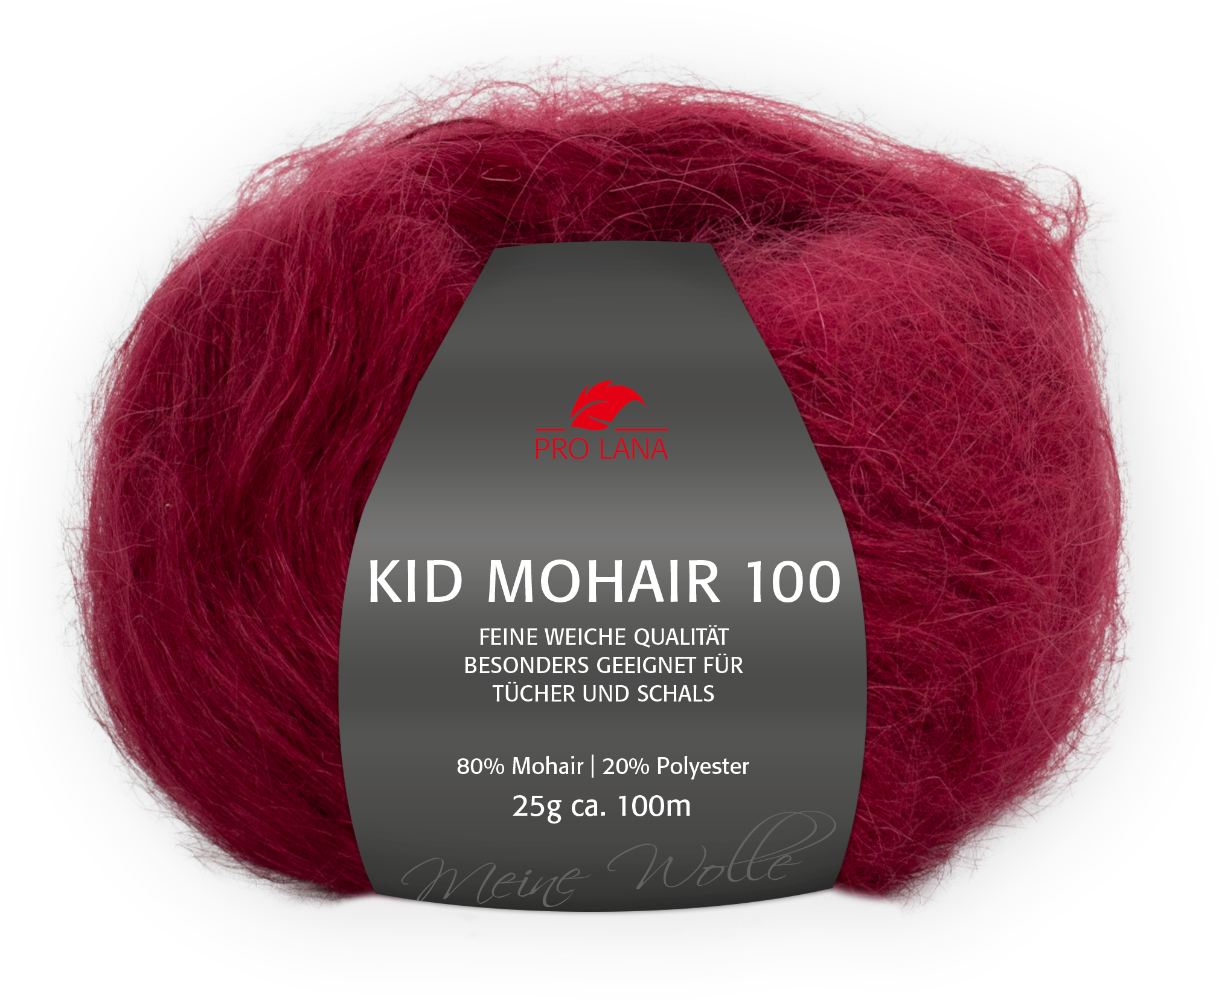 Kid Mohair 100 von Pro Lana 0031 - bordeaux